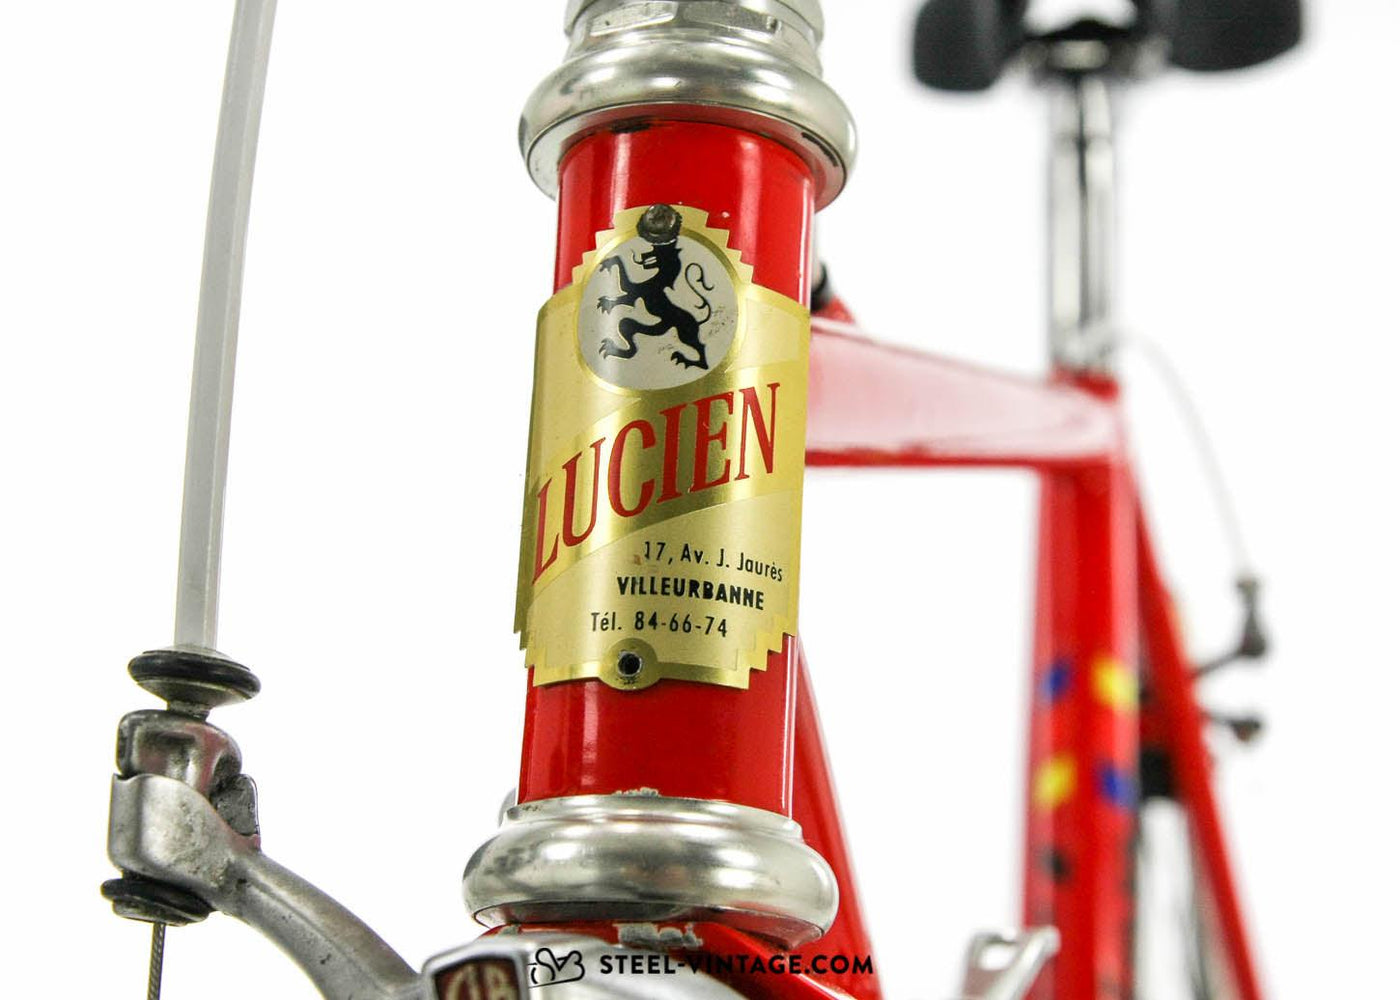 Cycles Lucien Constructeur Bike by Jacques Busset 1980s - Steel Vintage Bikes